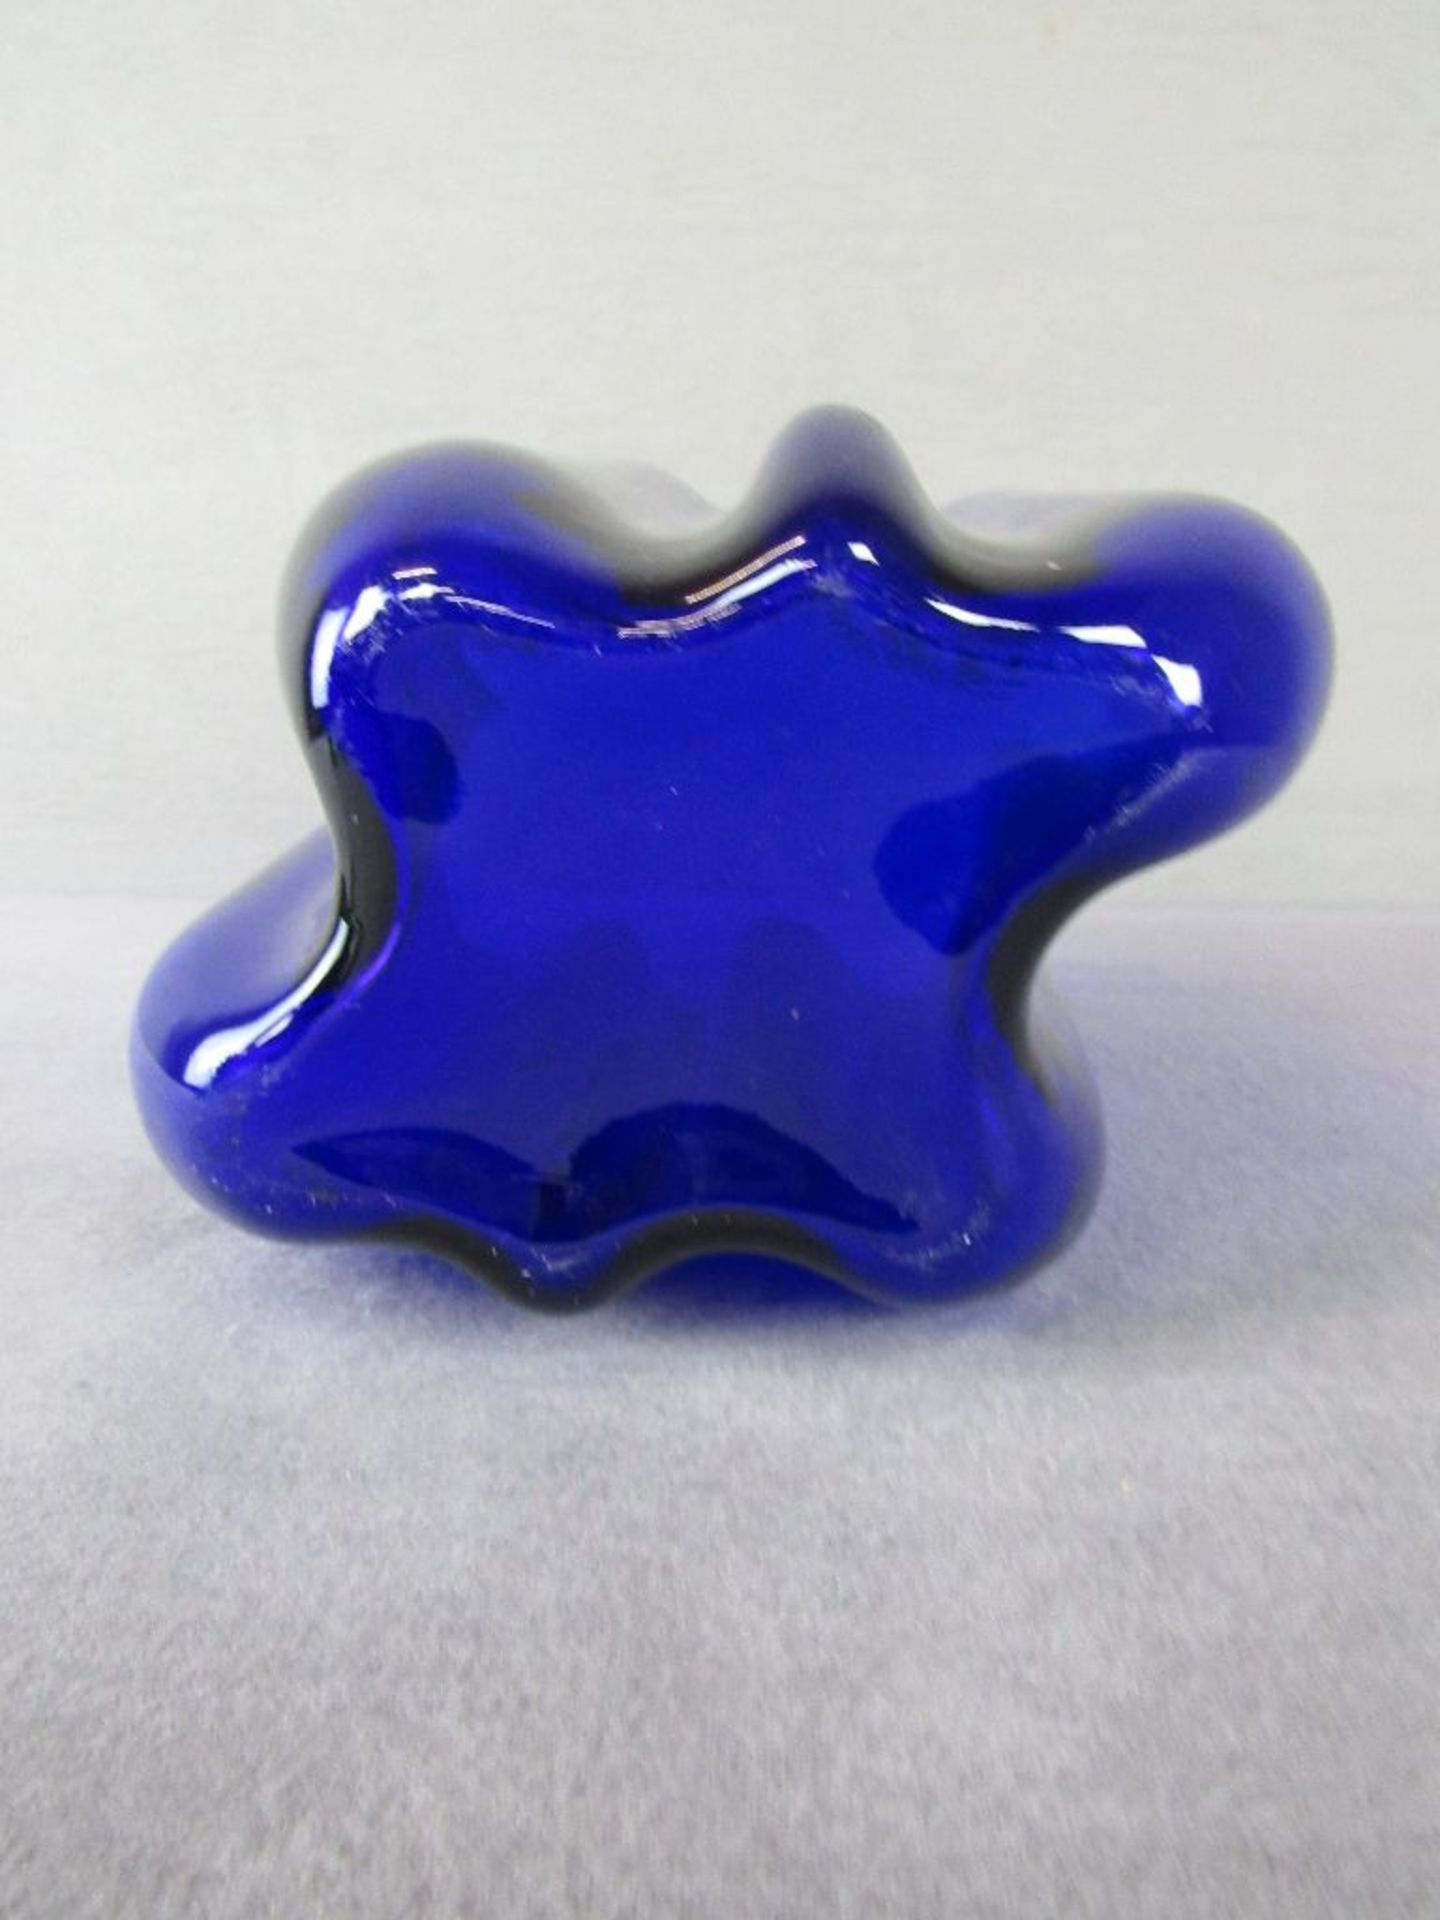 Designerglasvase Taschentuchform blau 24cm hoch - Image 3 of 3